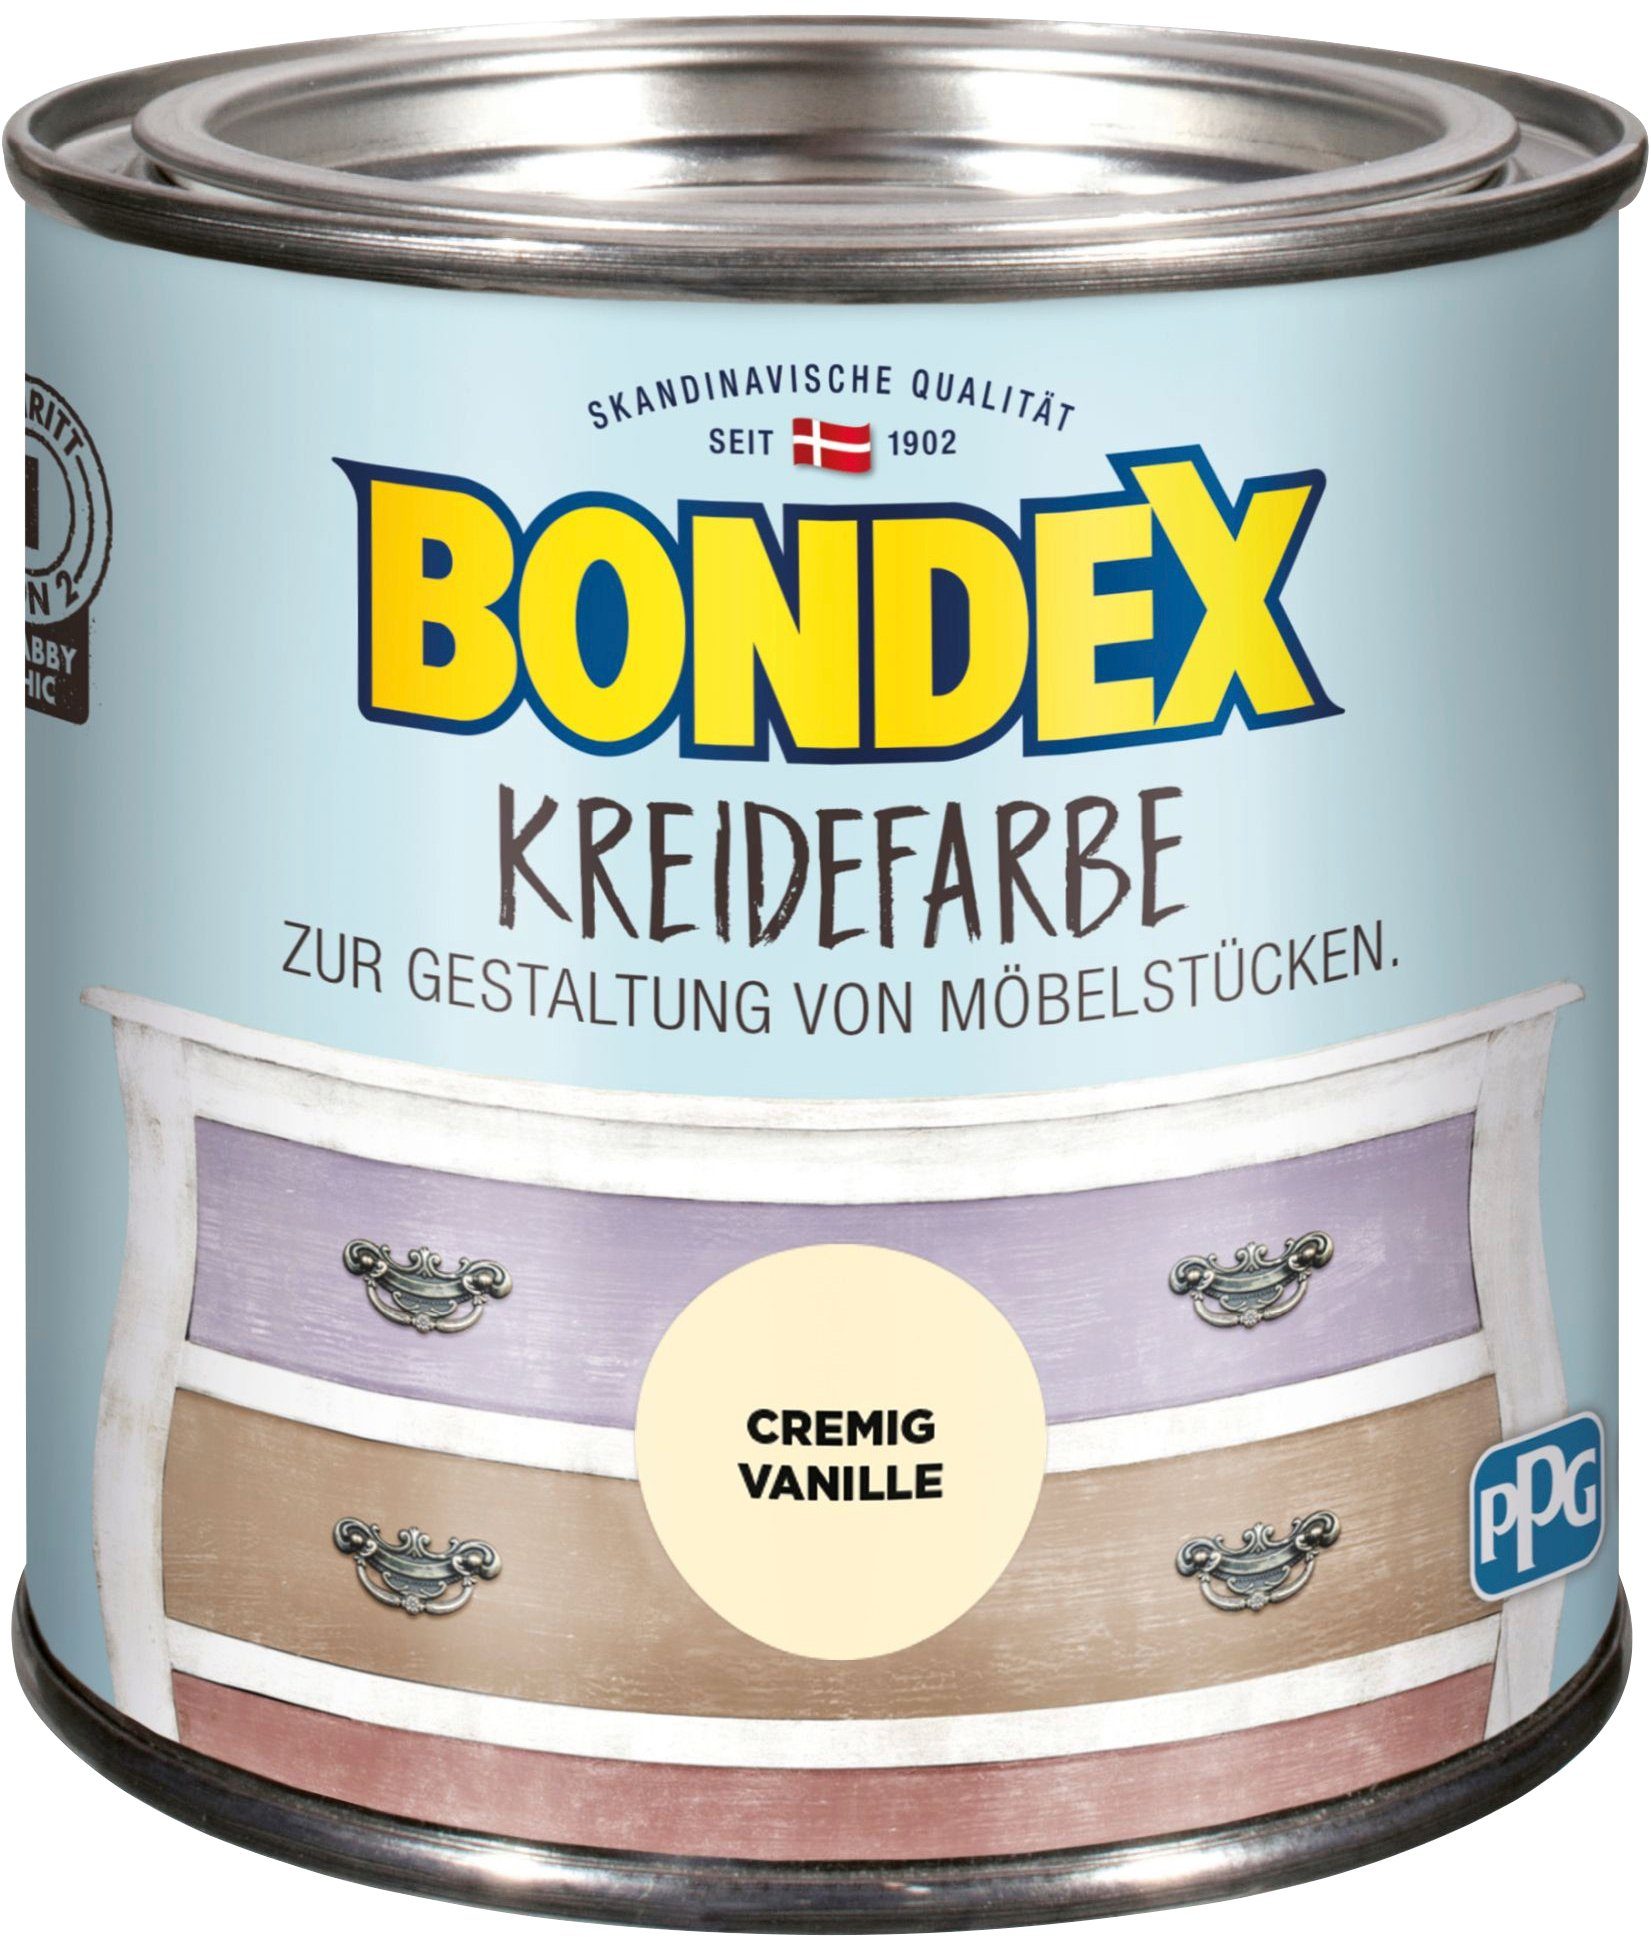 Bondex Kreidefarbe KREIDEFARBE, zur Cremig 0,5 Möbelstücken, Gestaltung Vanille von l